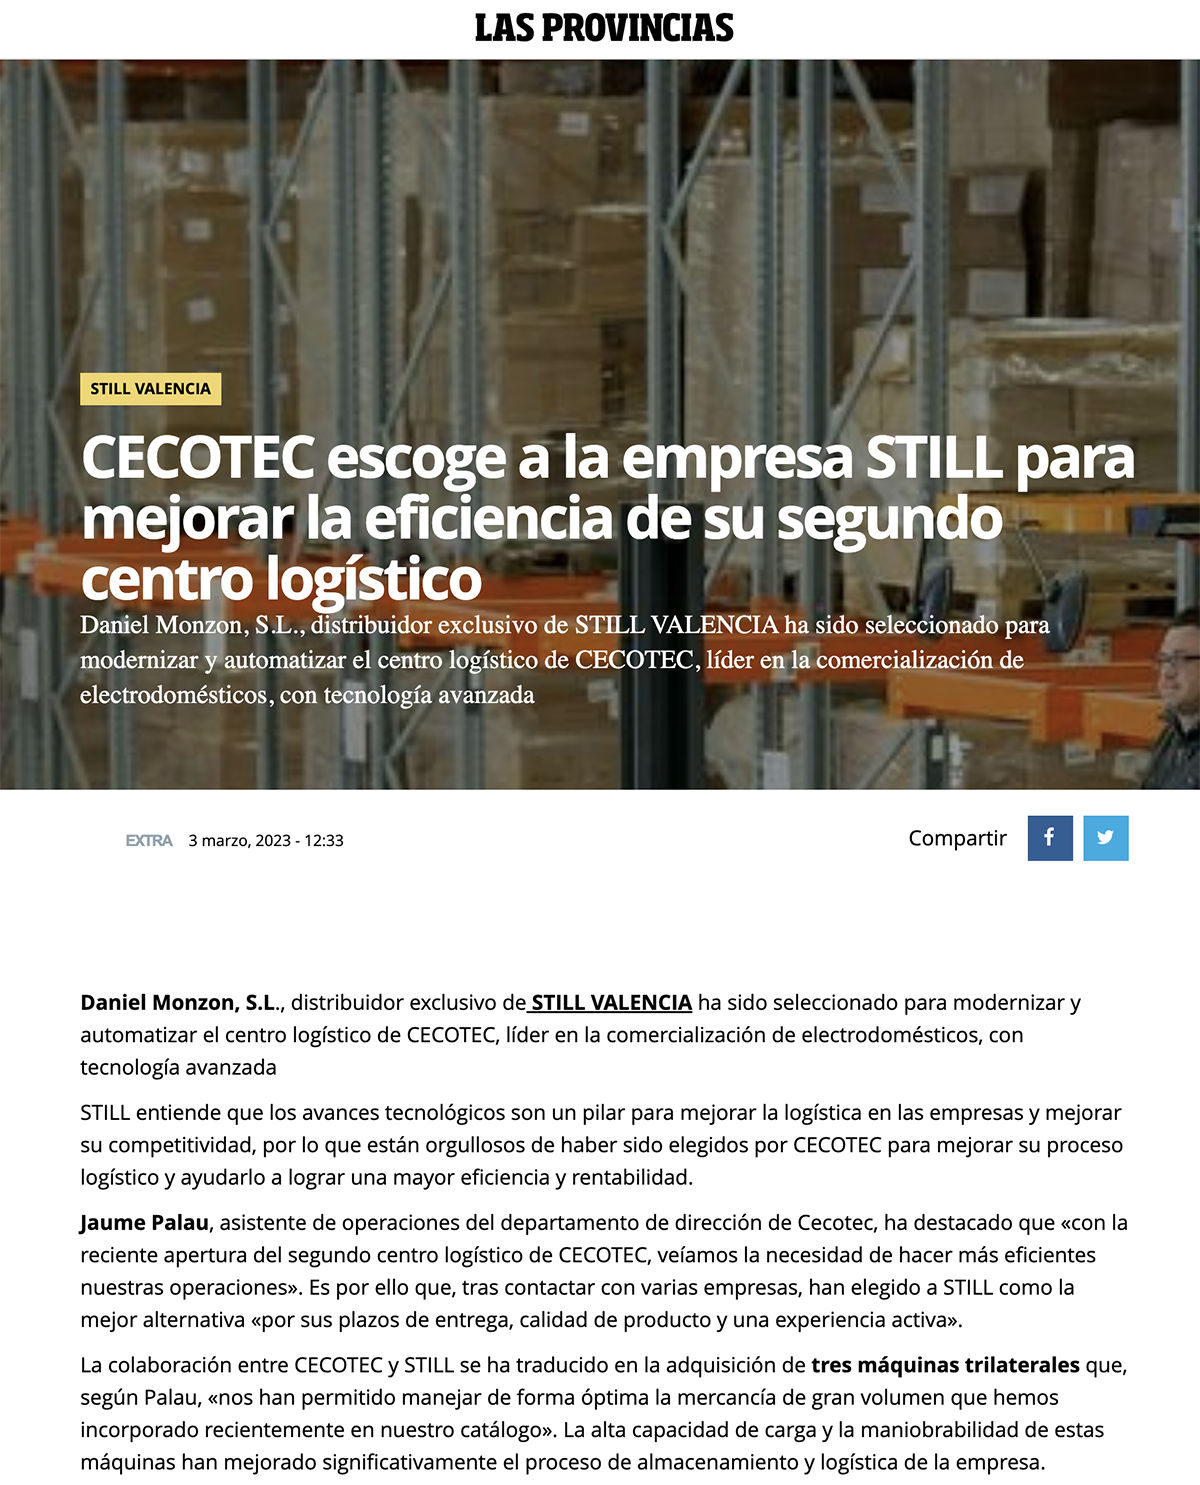 Las Provincias - Cecotec confia en Still para optimizar su nuevo centro logístico